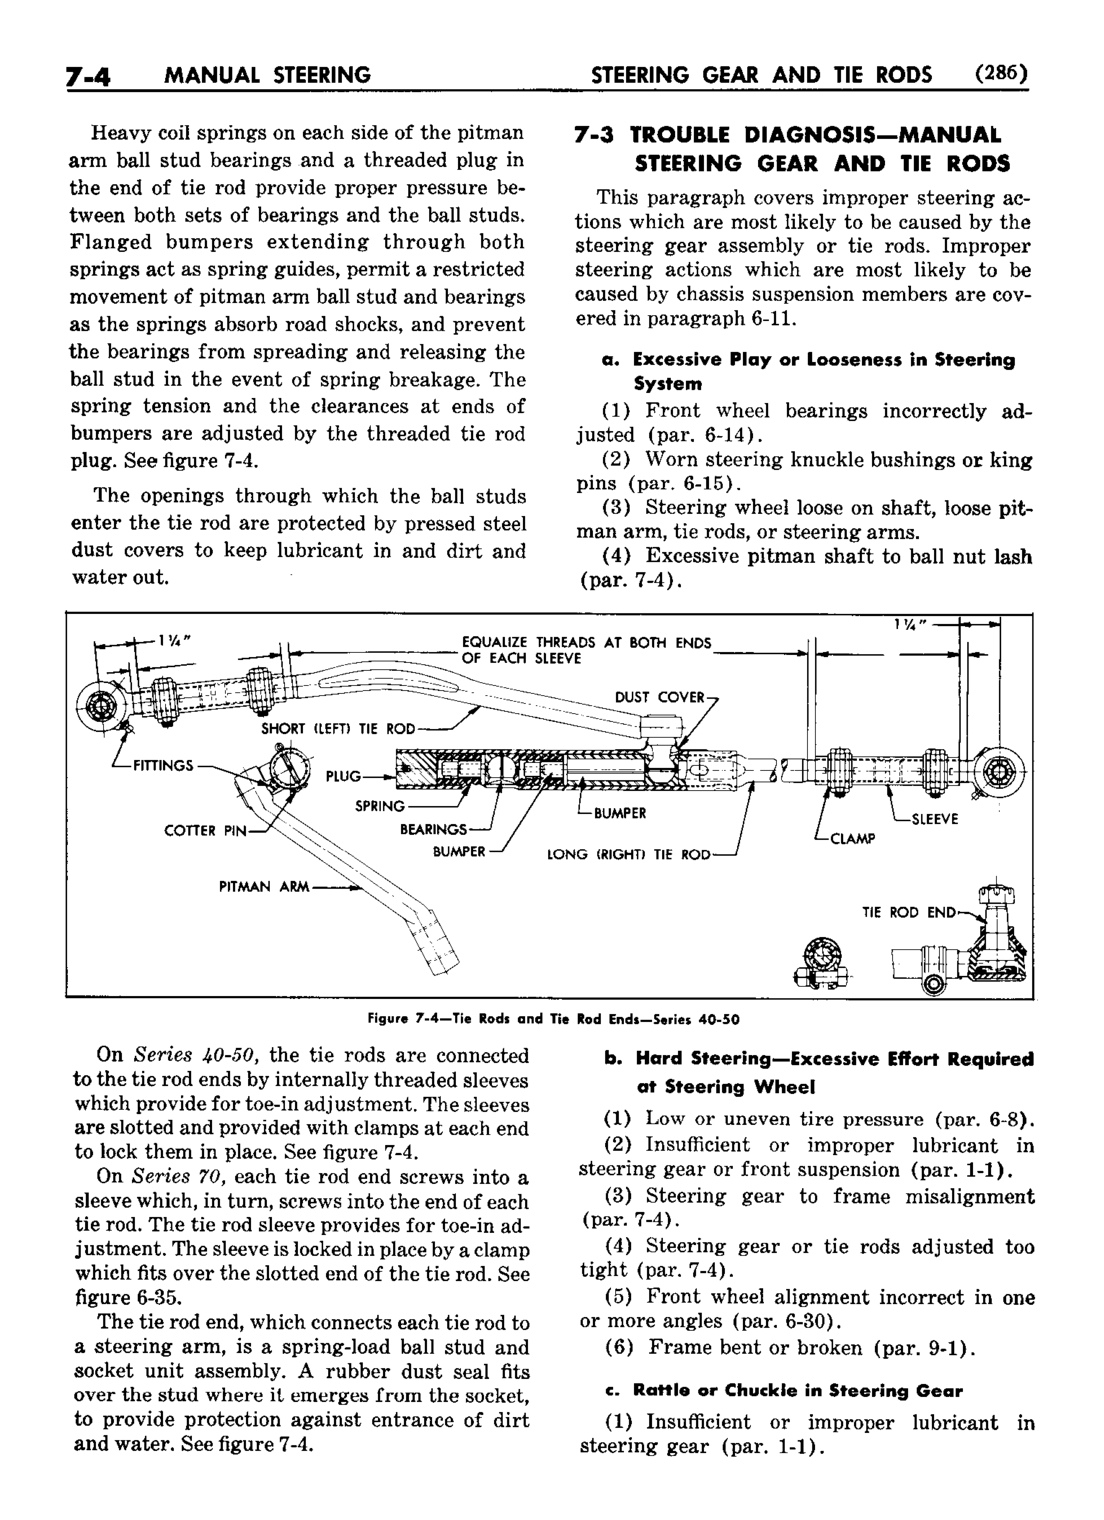 n_08 1952 Buick Shop Manual - Steering-004-004.jpg